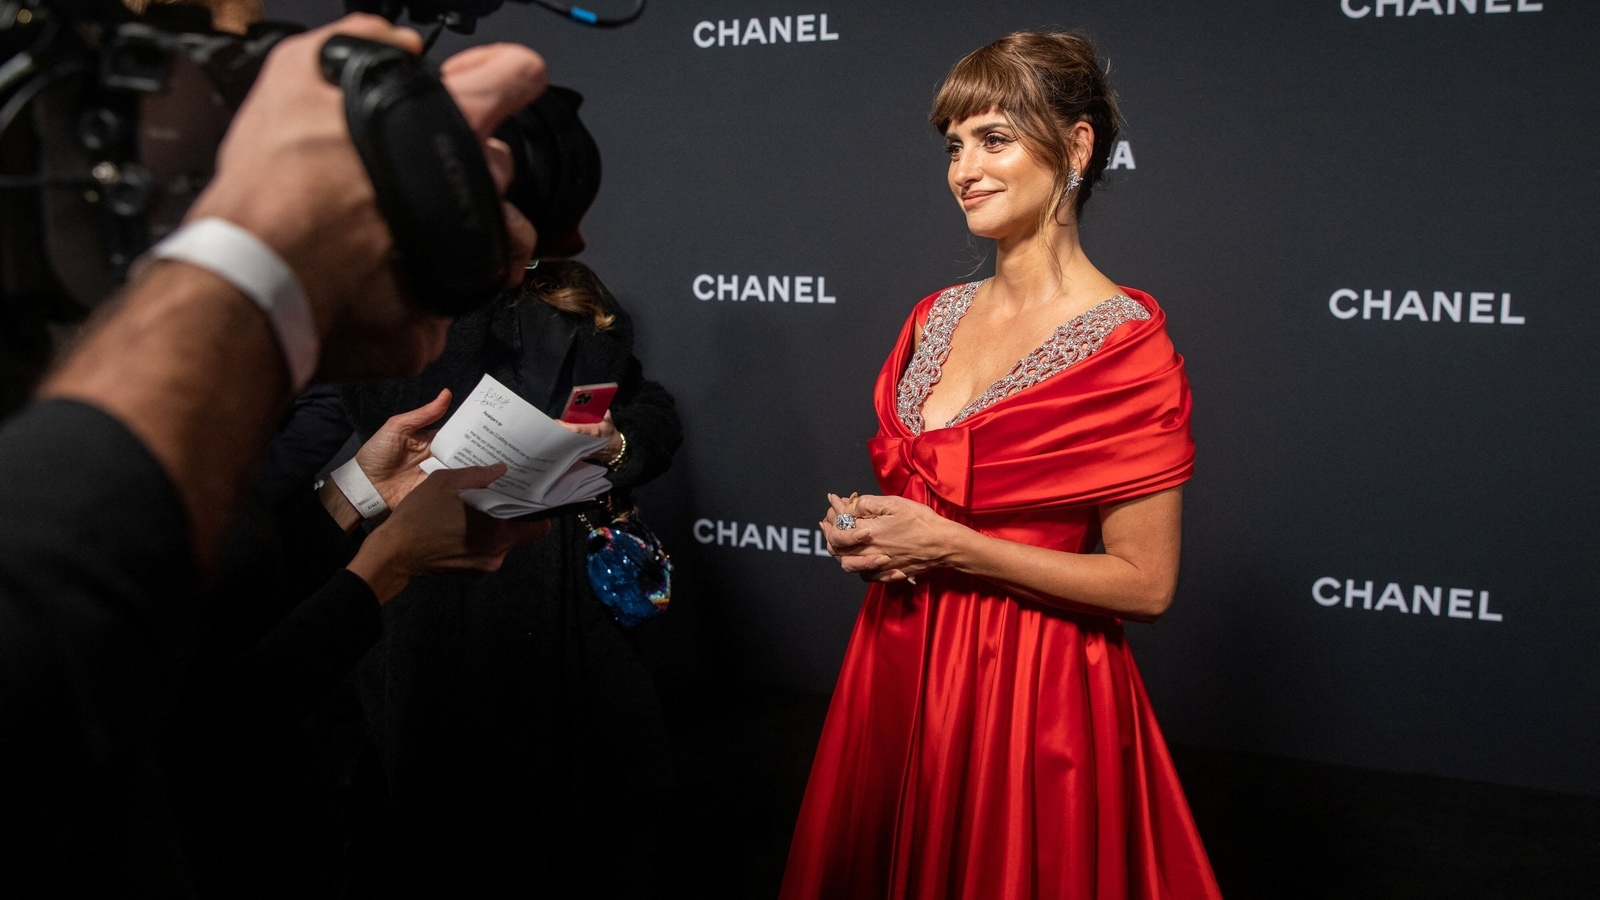 Chanel launches images of latest ambassador Penelope Cruz